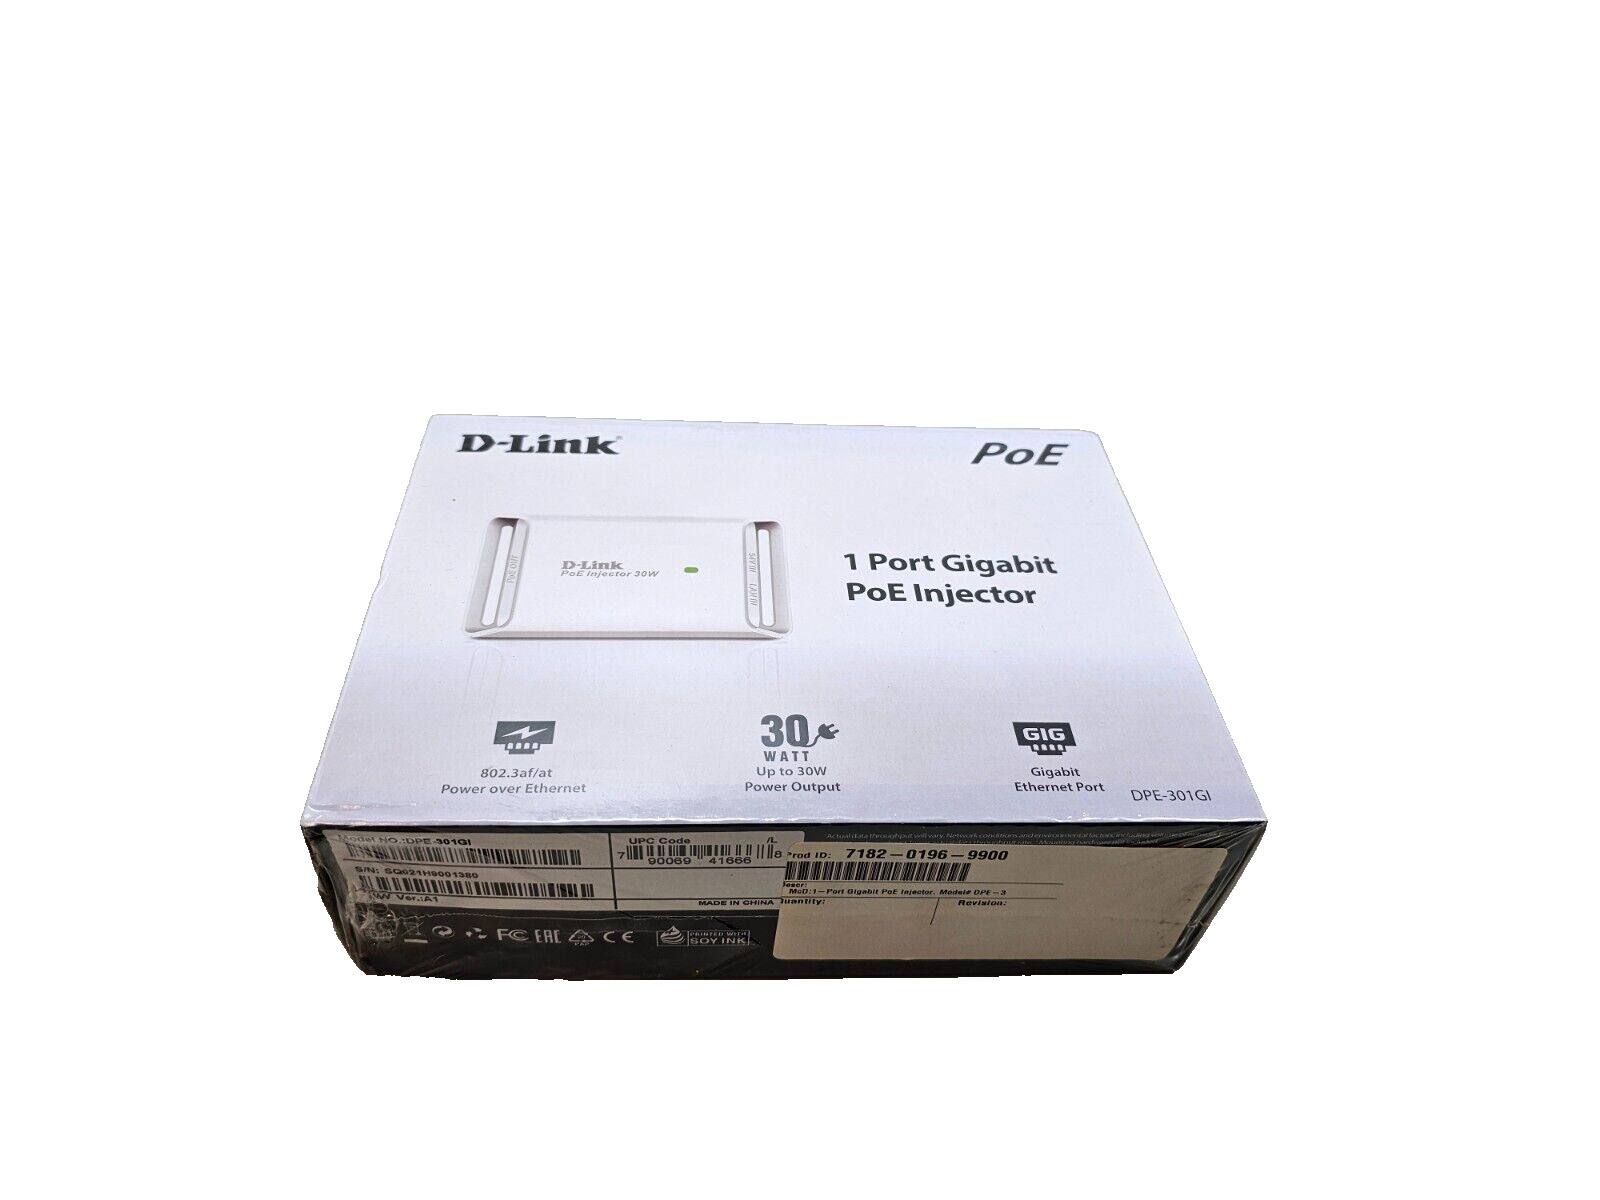 D-Link DPE-301GI Gigabit PoE+ Injector, 30 Watts, 802.3af/at Compliant, 100m